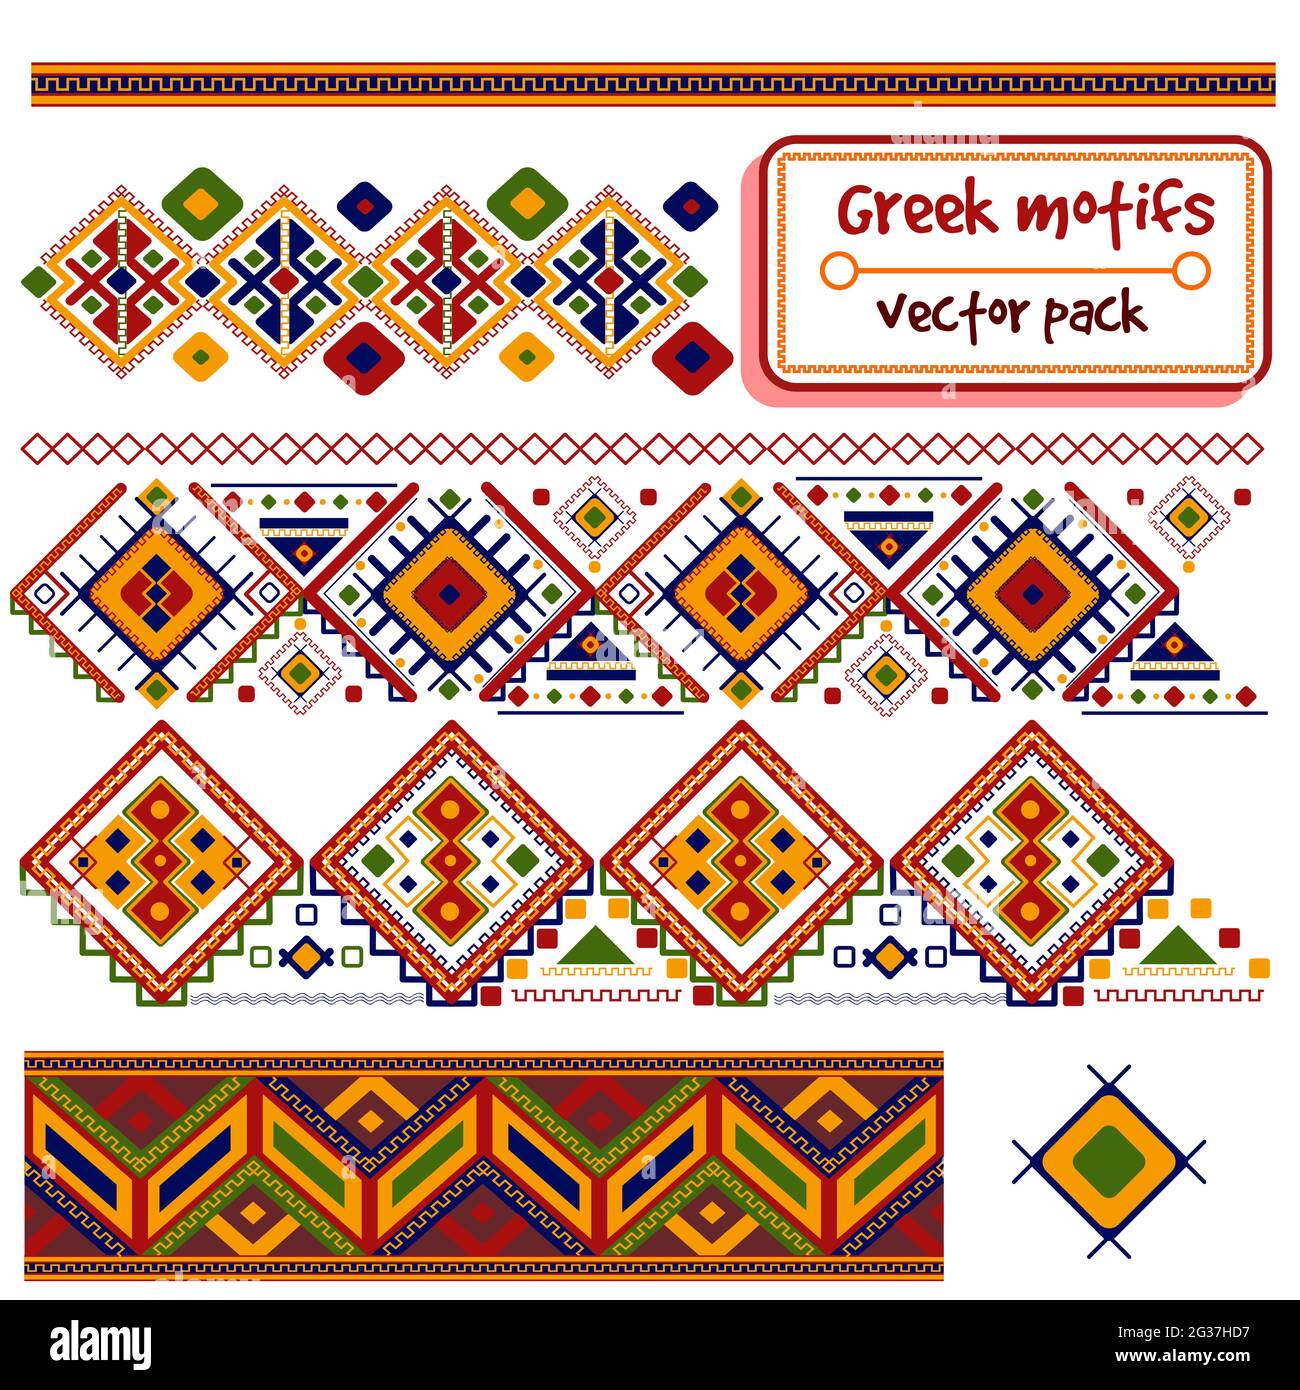 Vector Pack mit traditionellen Motiven aus Griechenland und Kreta. Nahtlose südeuropäische Muster und Titelgrenzen. Mediterrane und skandinavische c Stock Vektor